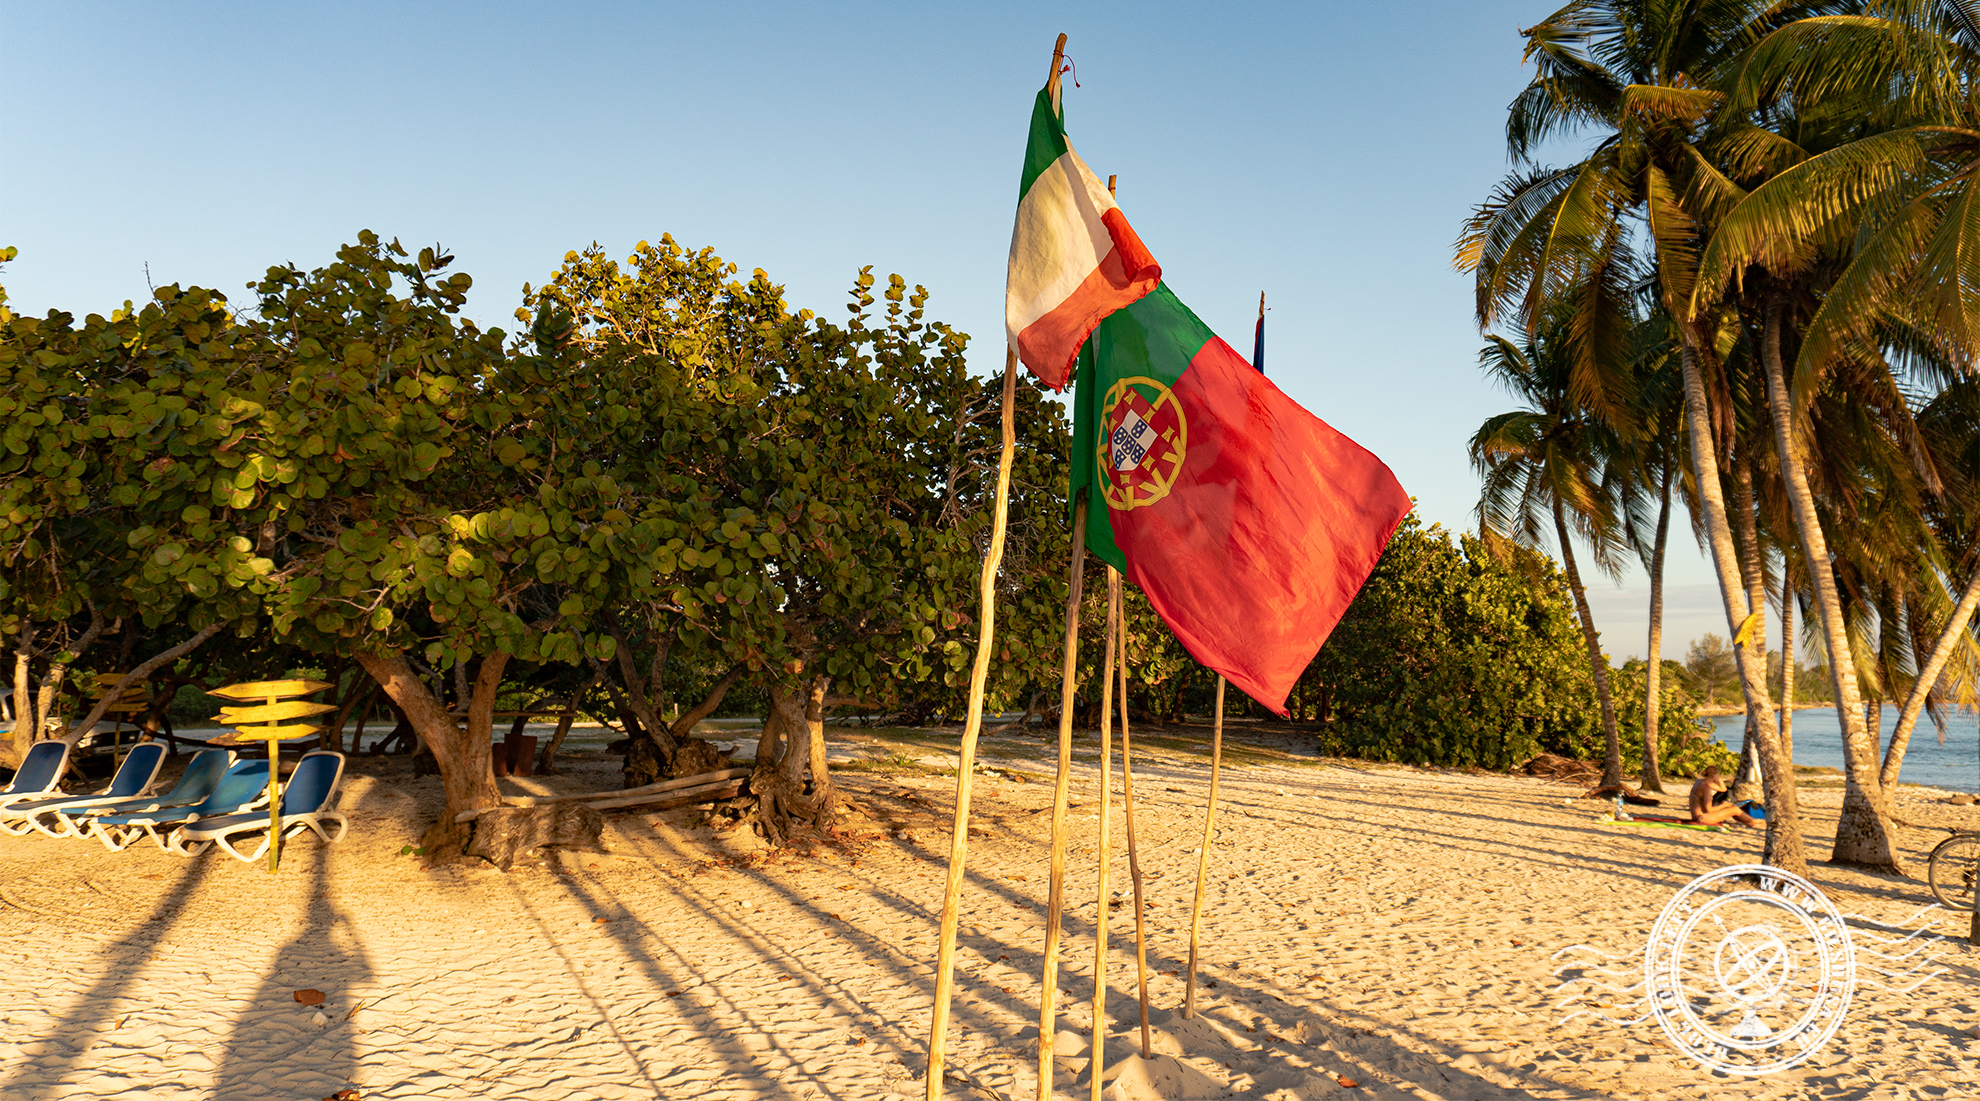 Portuguese and Irish flags at Playa Girón